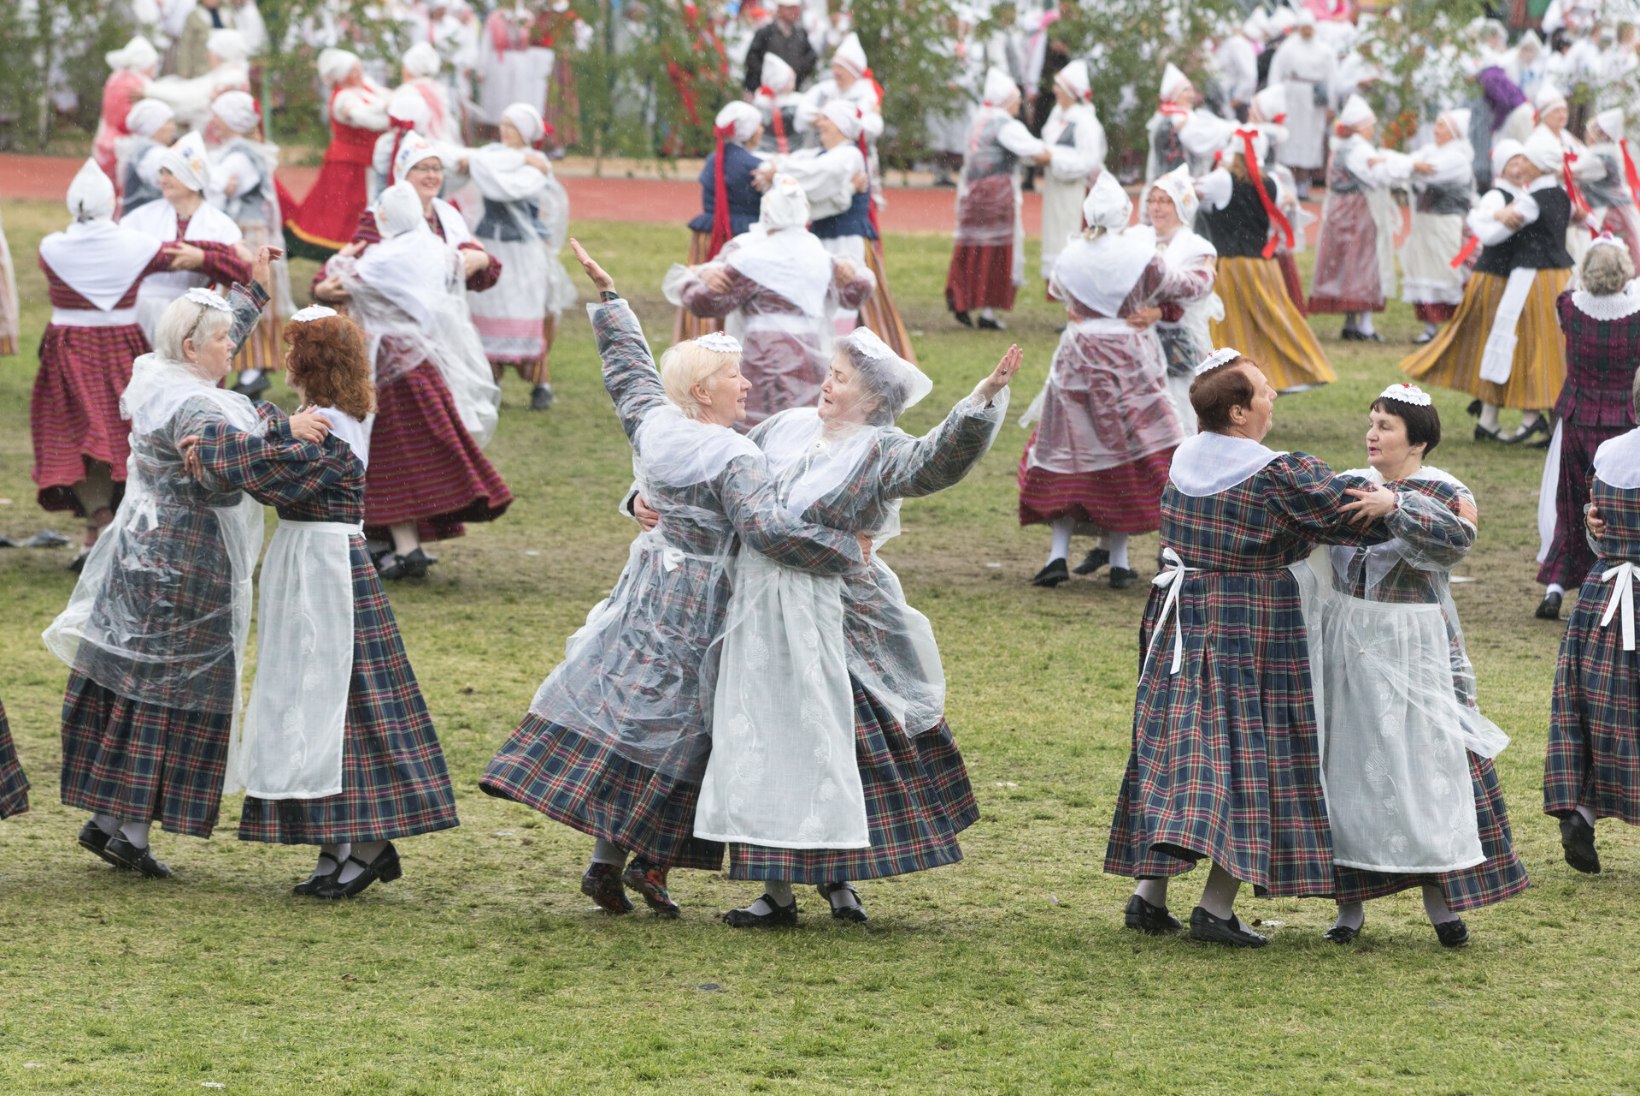 Eesti naiste tantsupeol vanaemade rühmadele mustrid seadnud Karin Uusküla: „Vanaemad on hästi krapsakad, tulevad kõigega kaasa.“